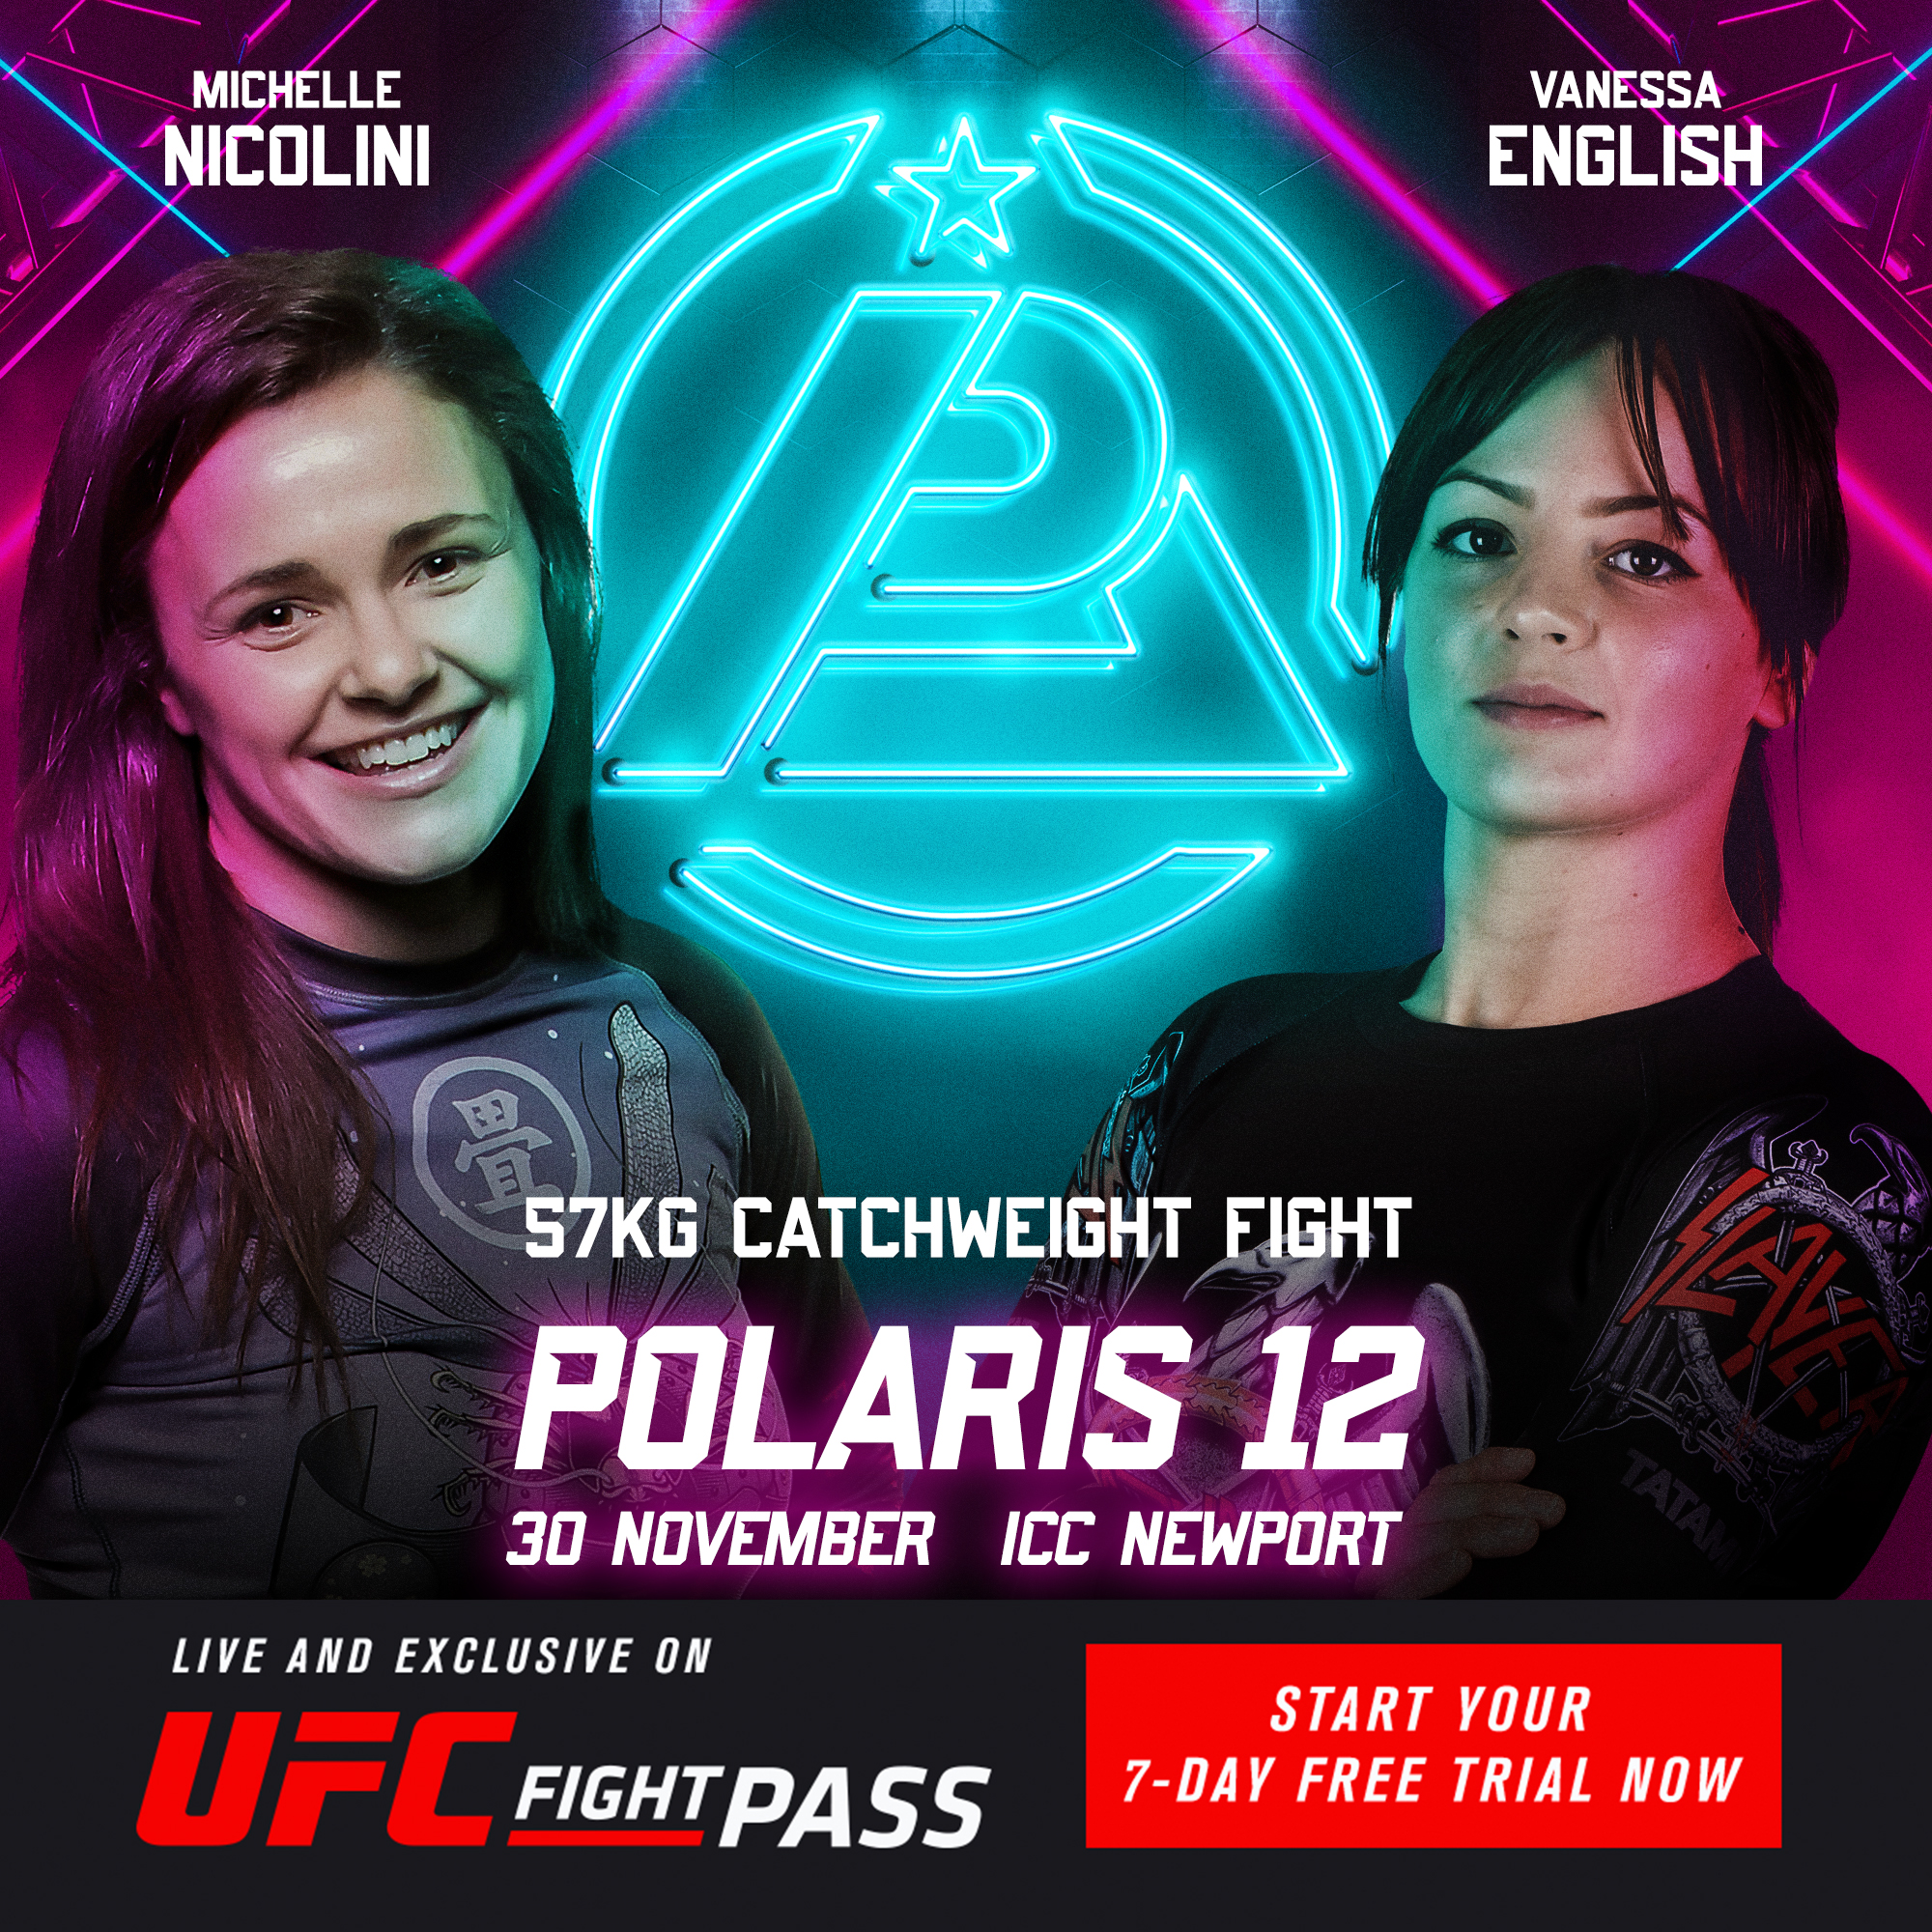 Polaris 12 – Michelle Nicolini VS Vanessa English 